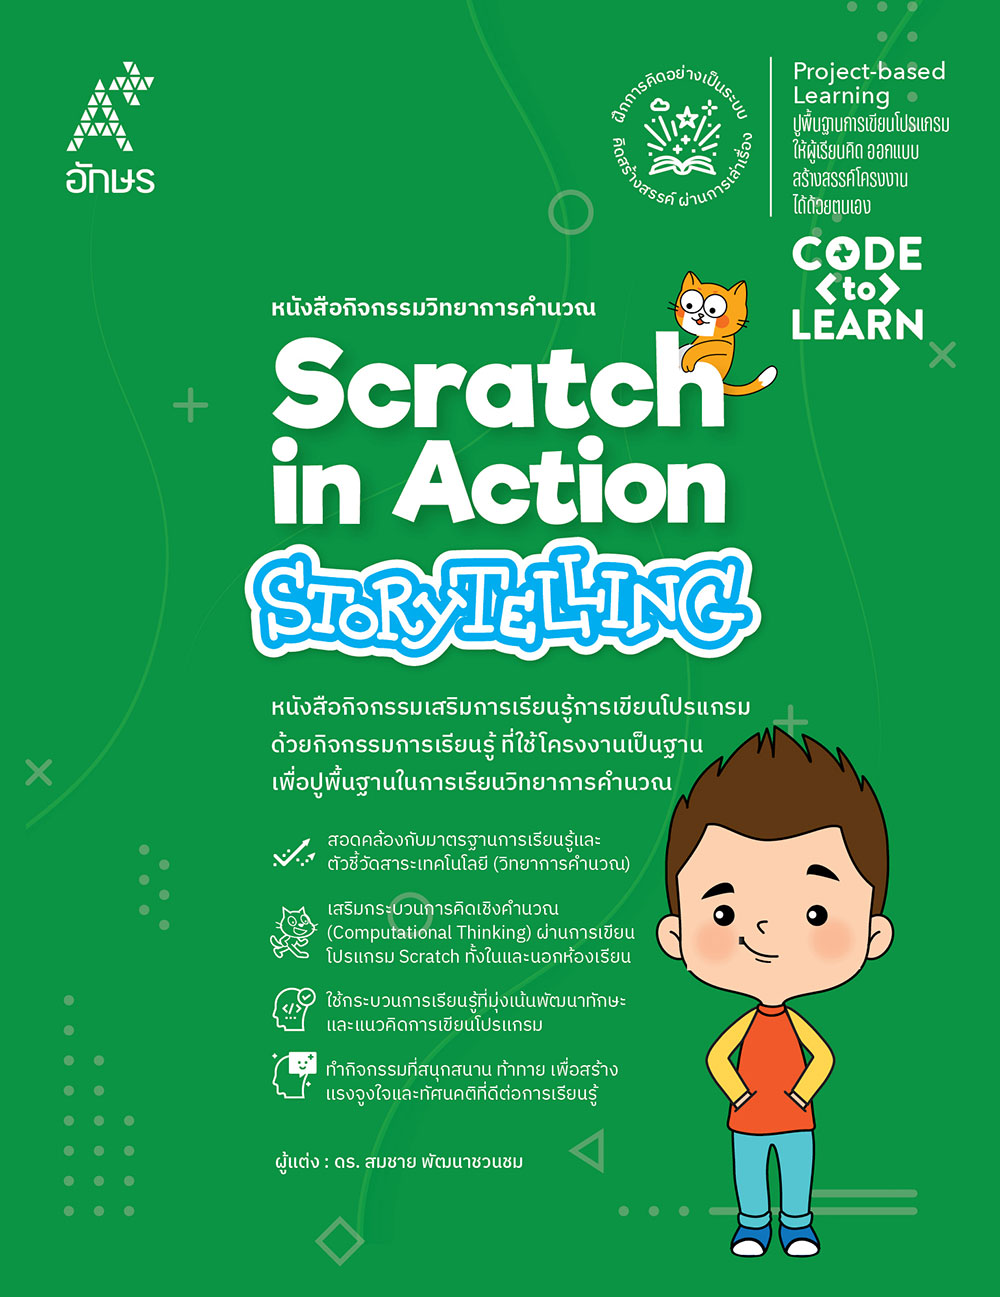 หนังสือกิจกรรมวิทยาการคำนวณ Scratch in Action-Storytelling